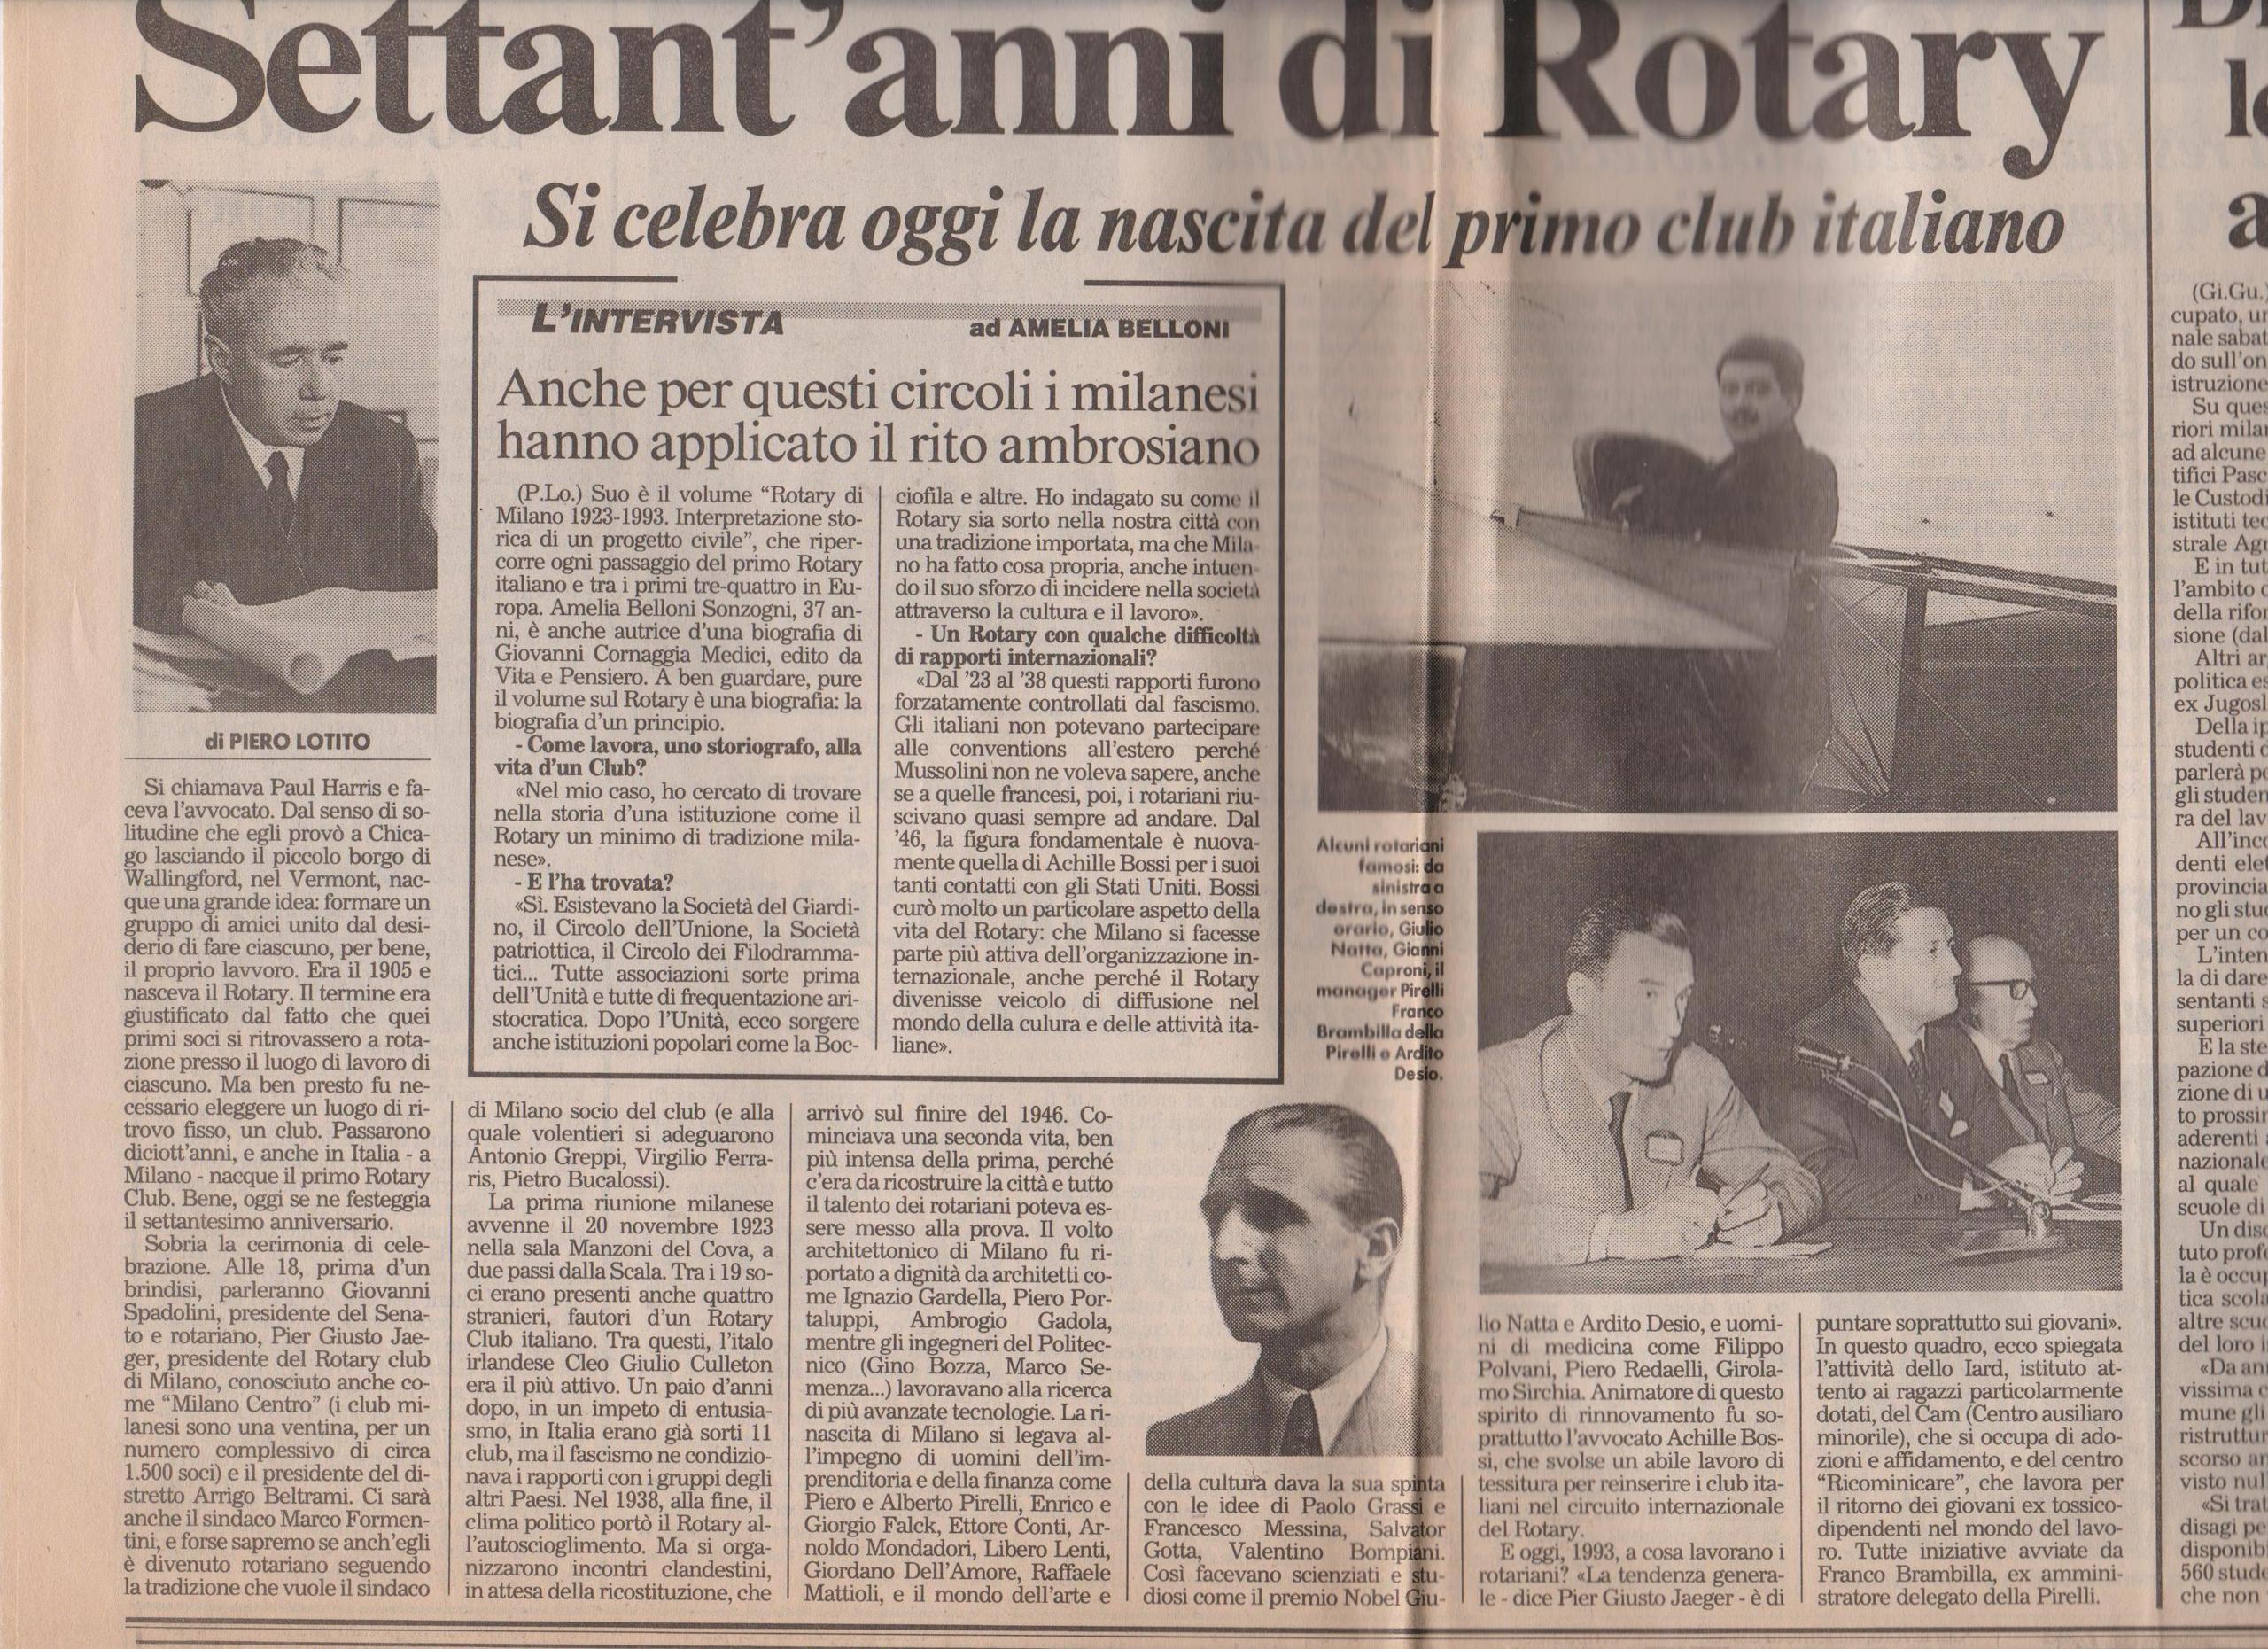 23 novembre 1993 articolo di Piero Lotito